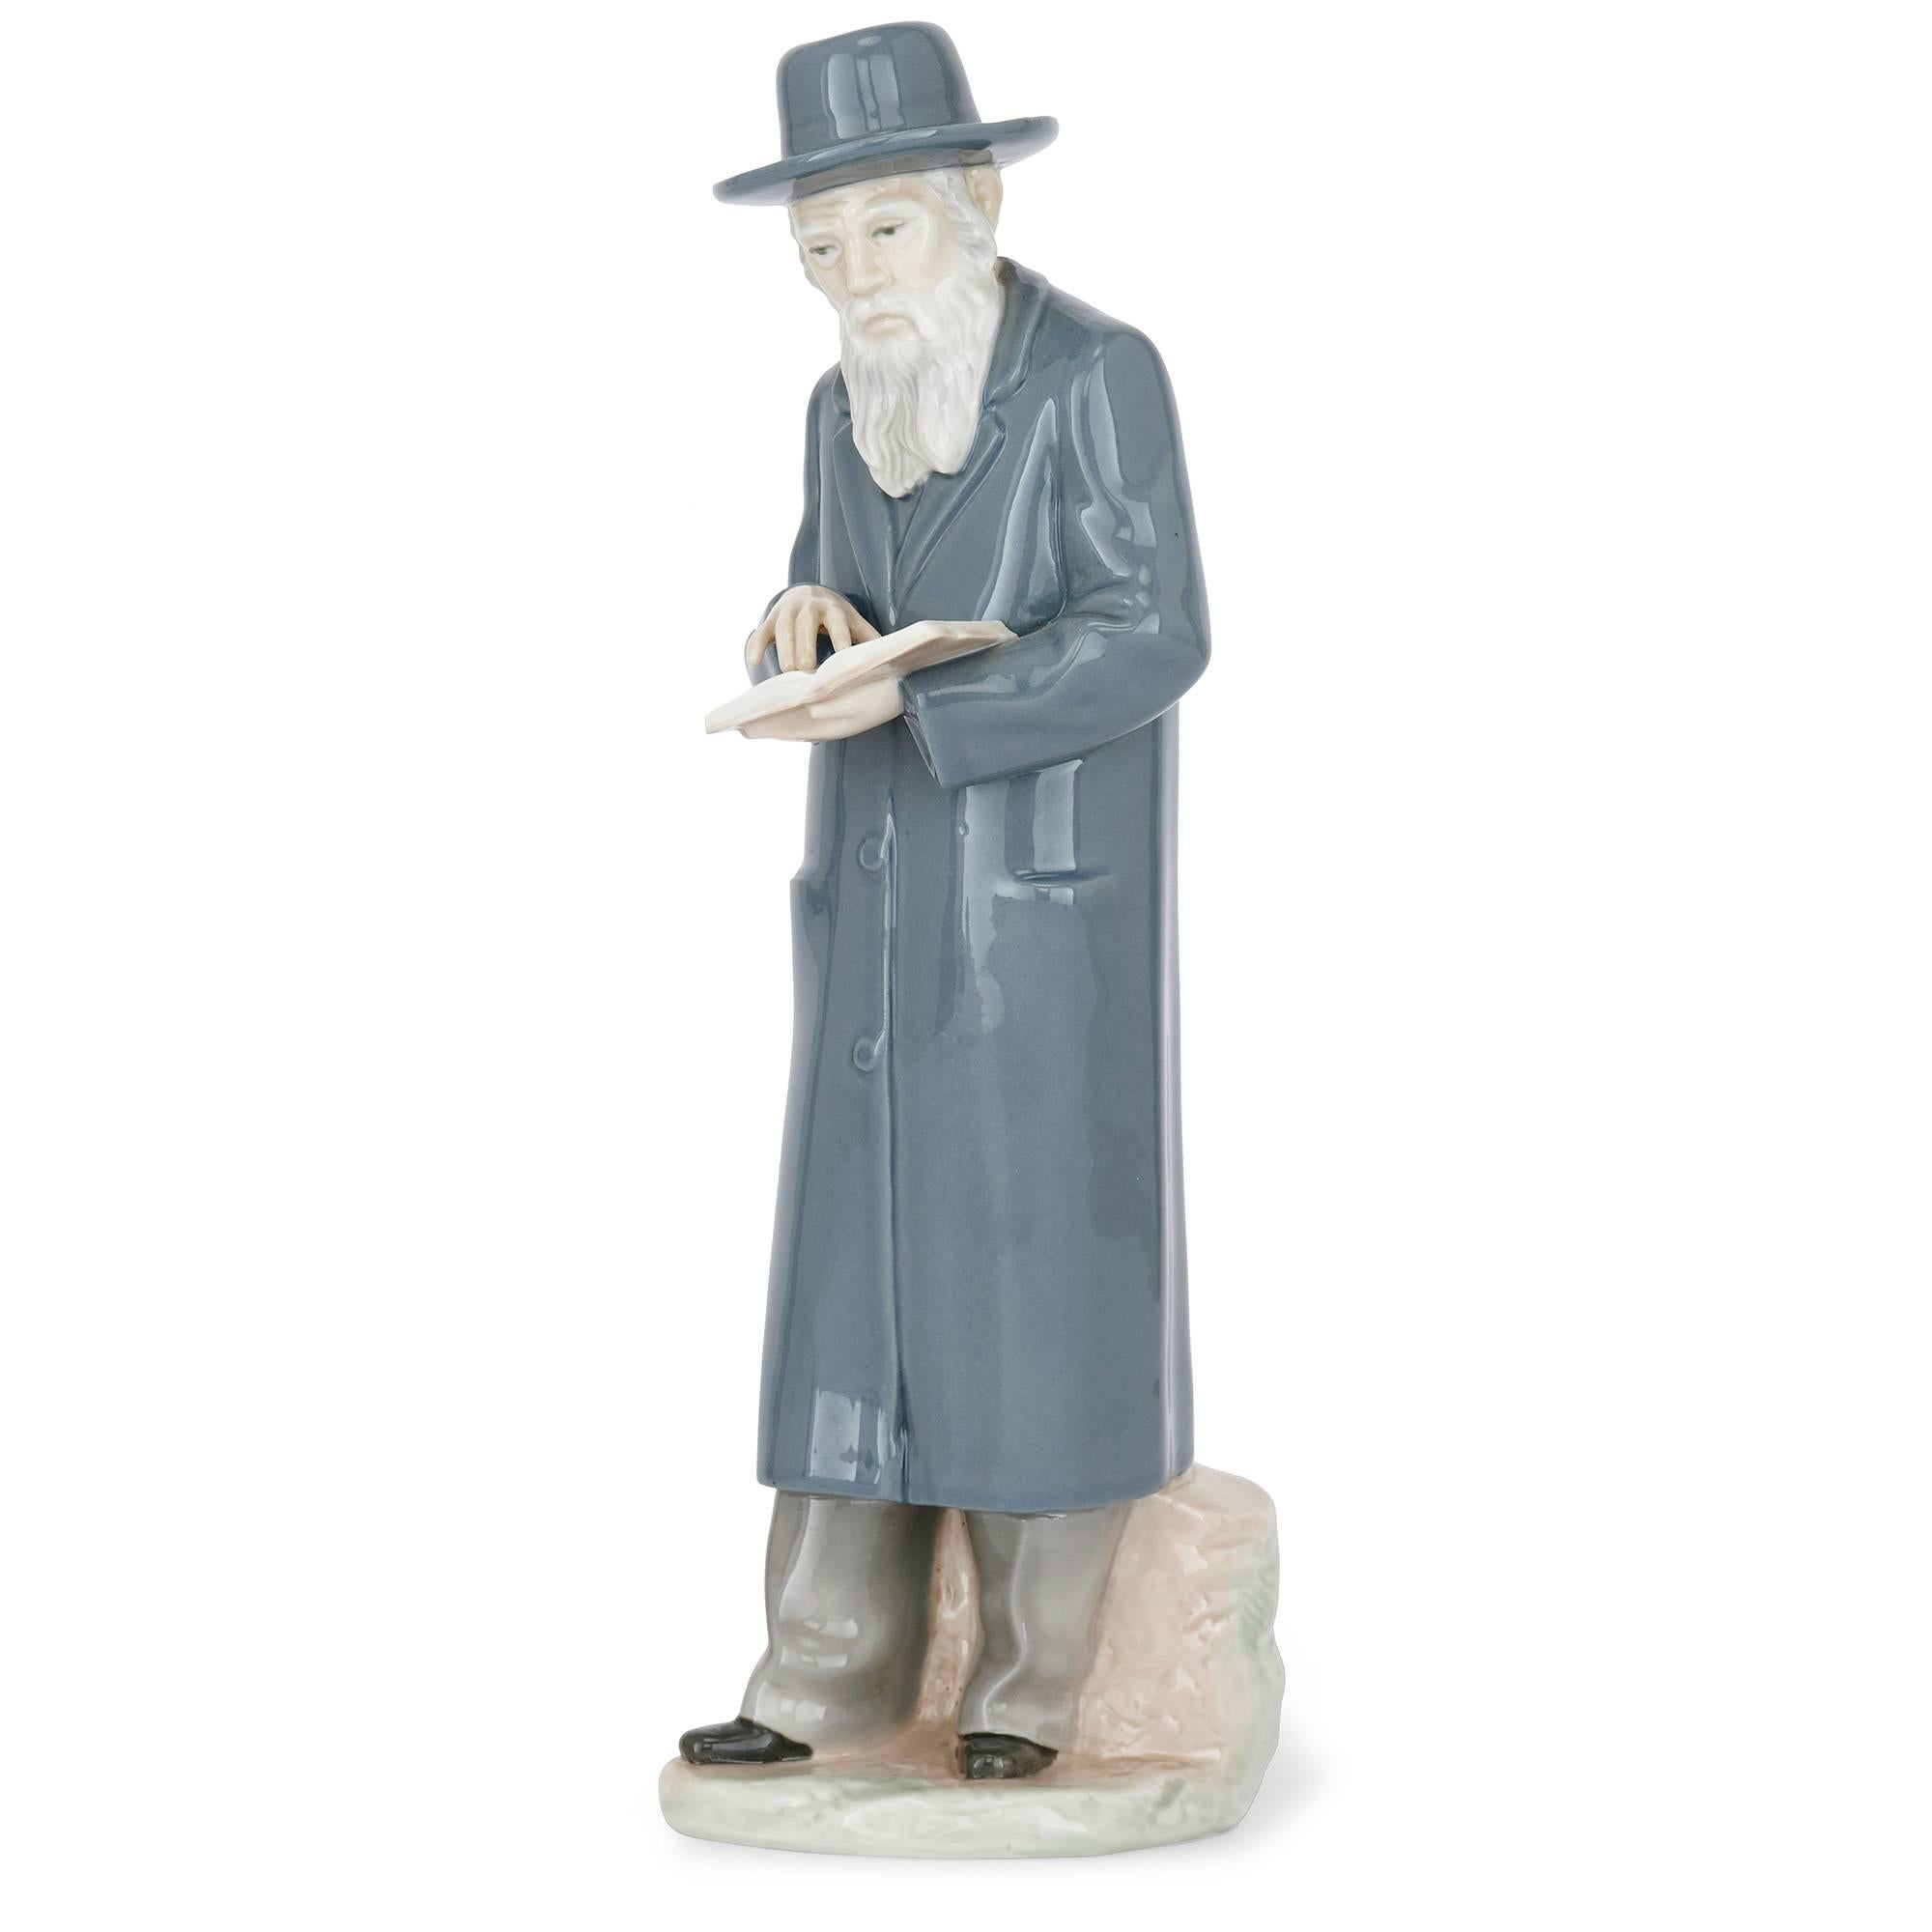 Cette grande figurine ancienne en porcelaine représente un rabbin juif avec un siddur (livre de prières). Il s'agit d'une charmante pièce de sculpture en porcelaine européenne du XIXe siècle, qui constitue une pièce décorative de grande collection.